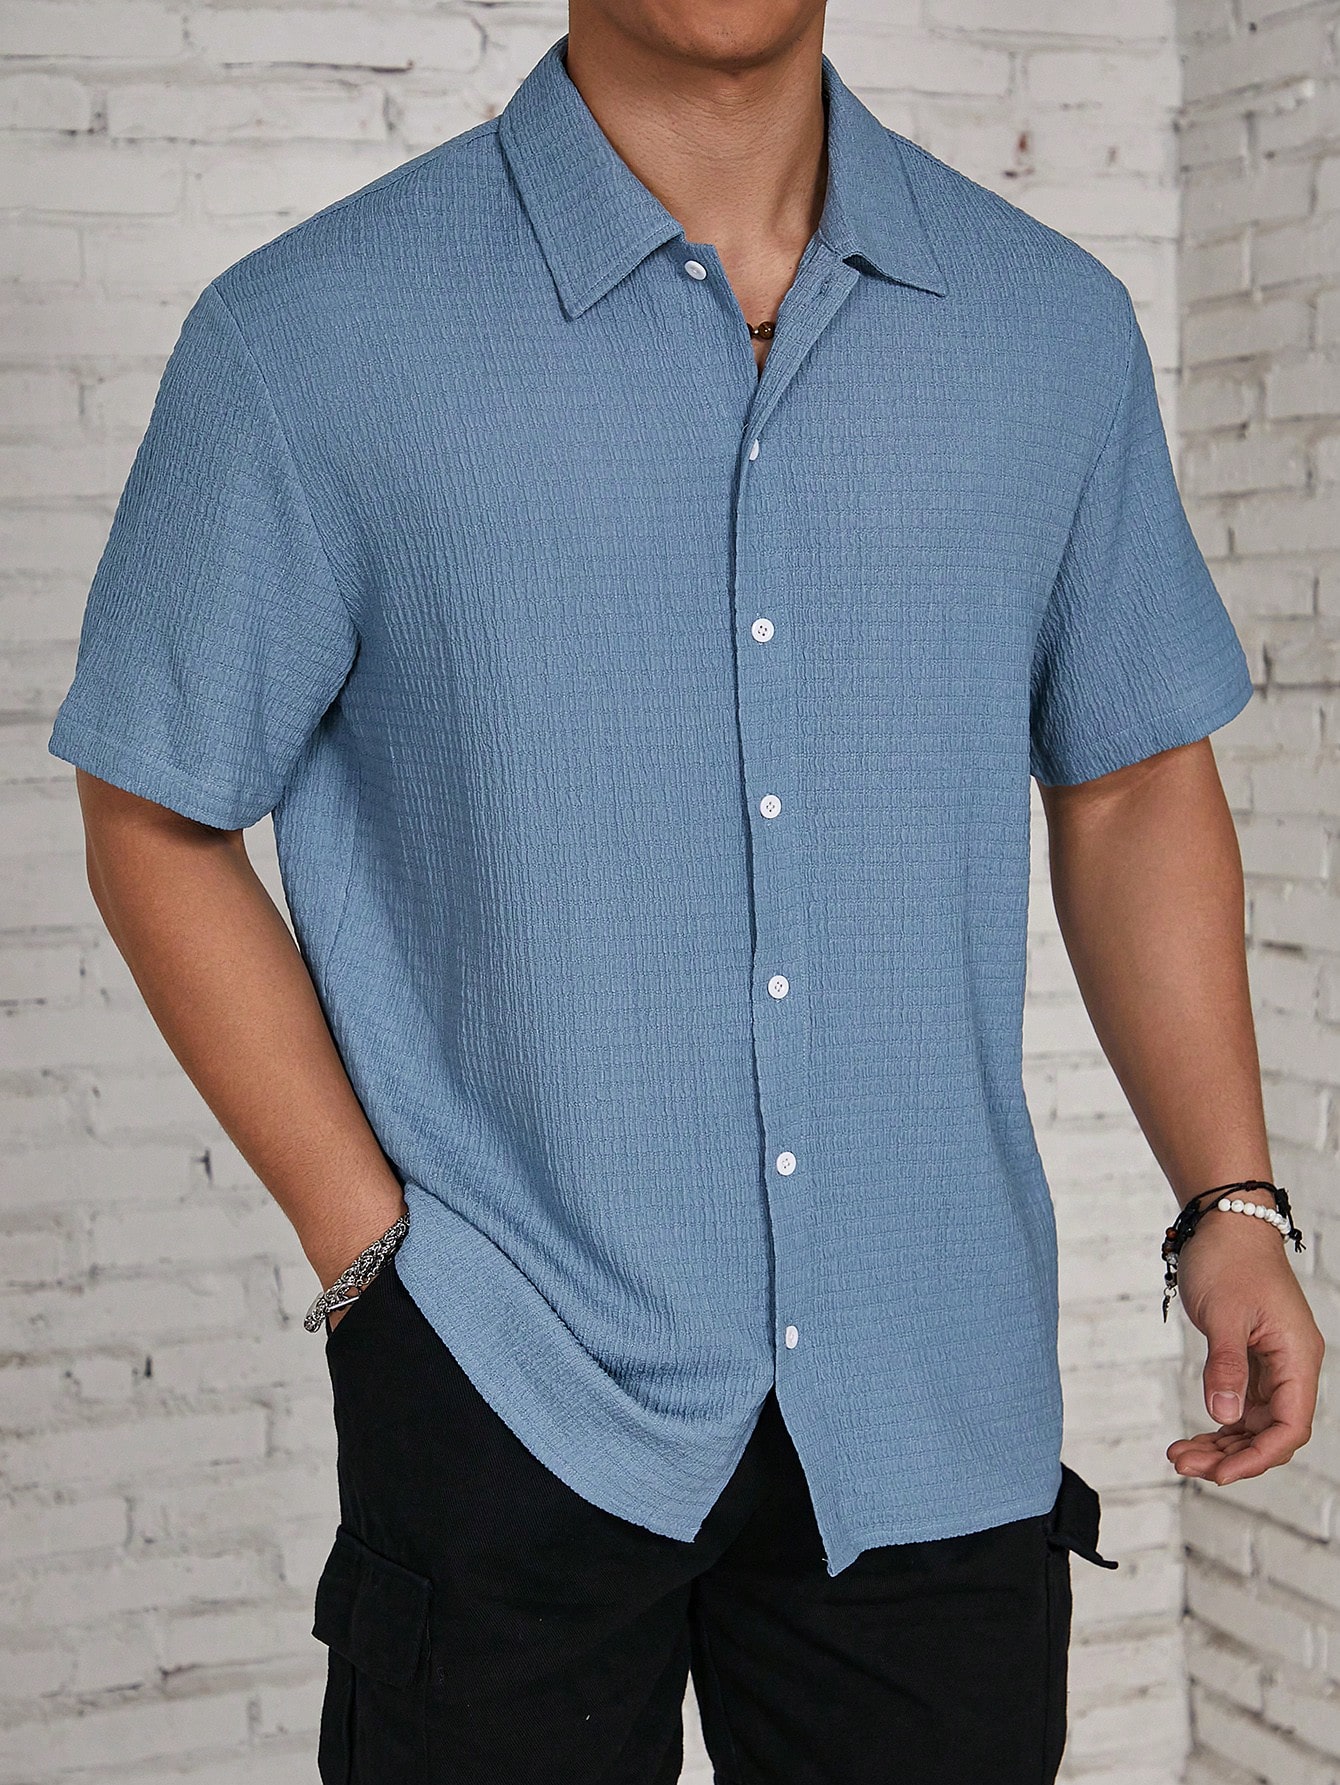 Мужская текстурированная рубашка на пуговицах с коротким рукавом Manfinity Homme, синий текстурированная однотонная мужская футболка поло cb drytec genre cutter